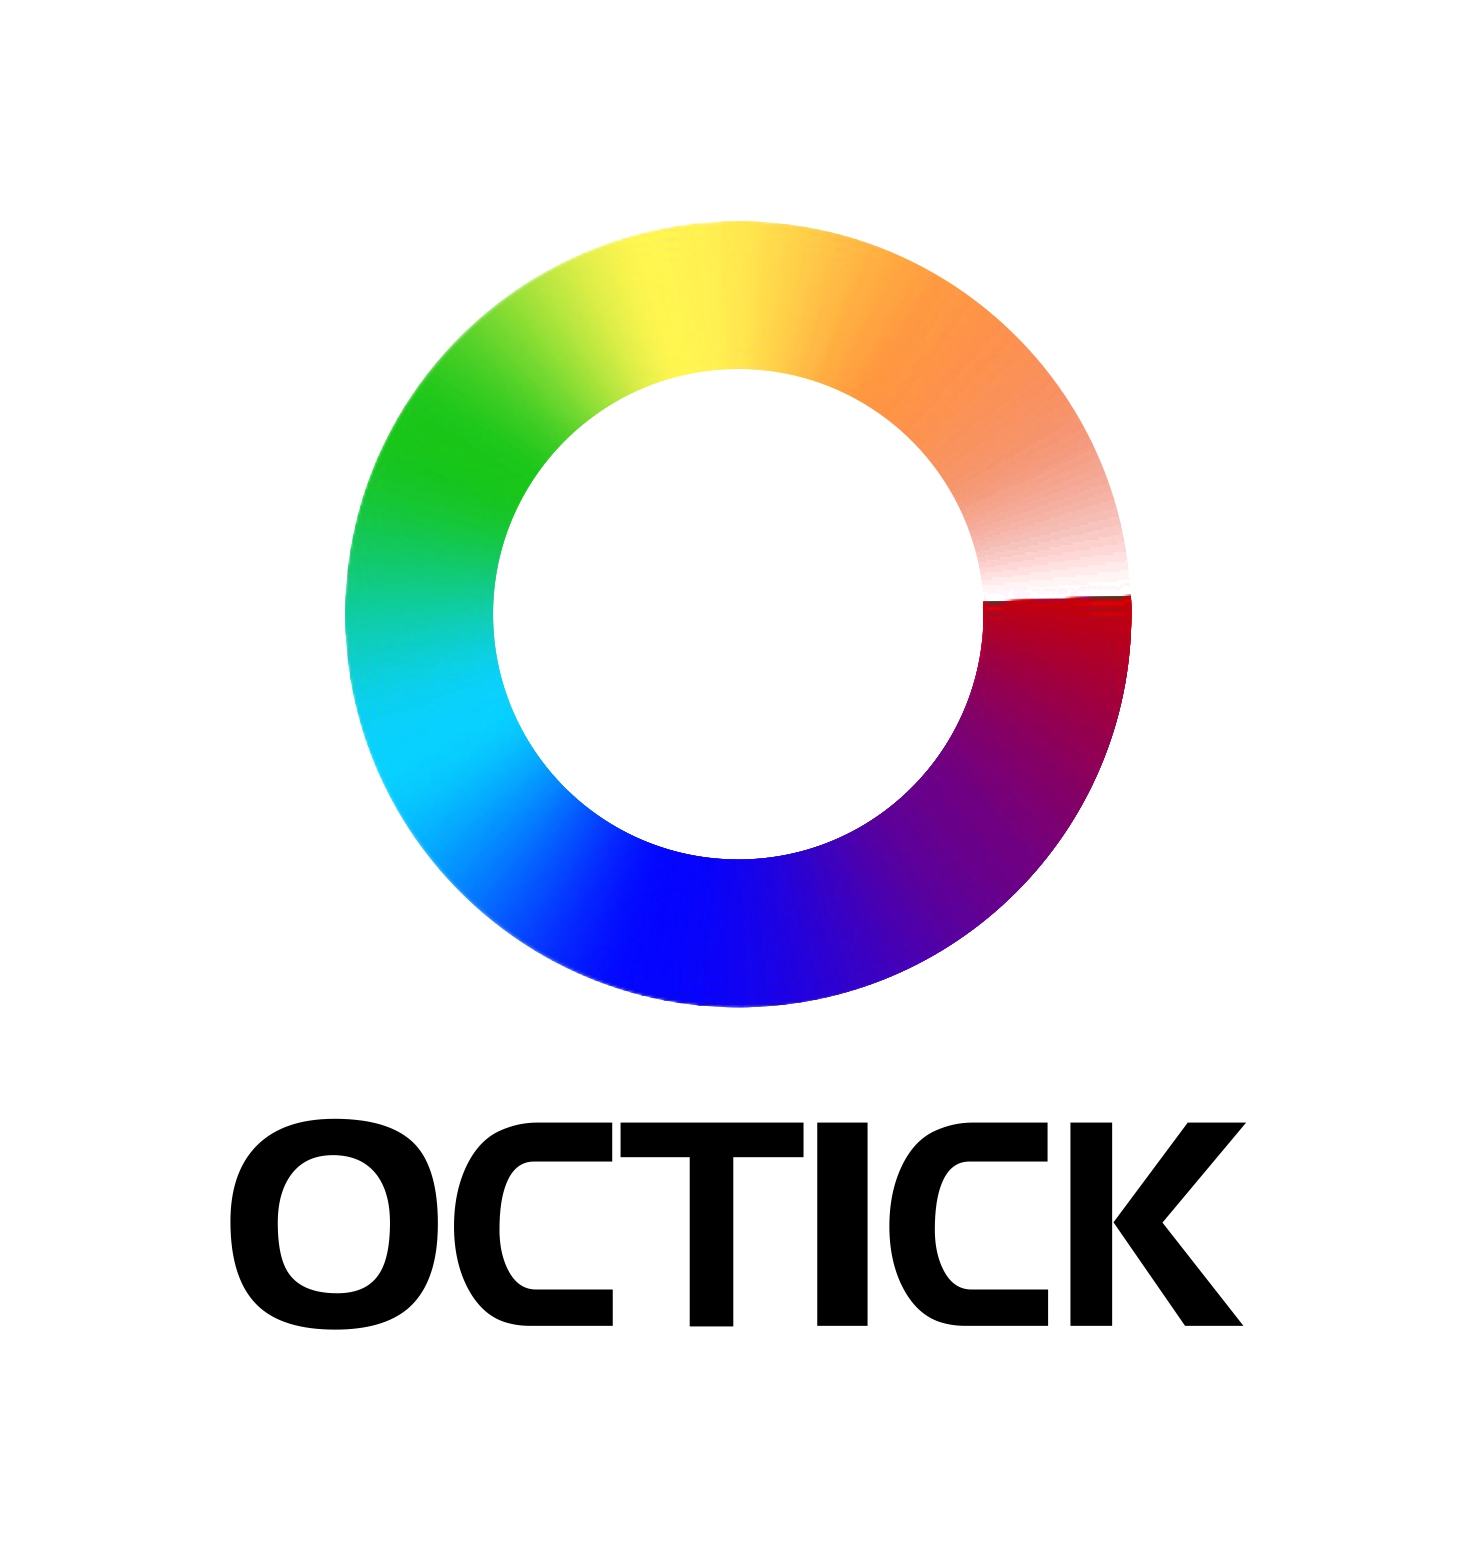 Octick Digital